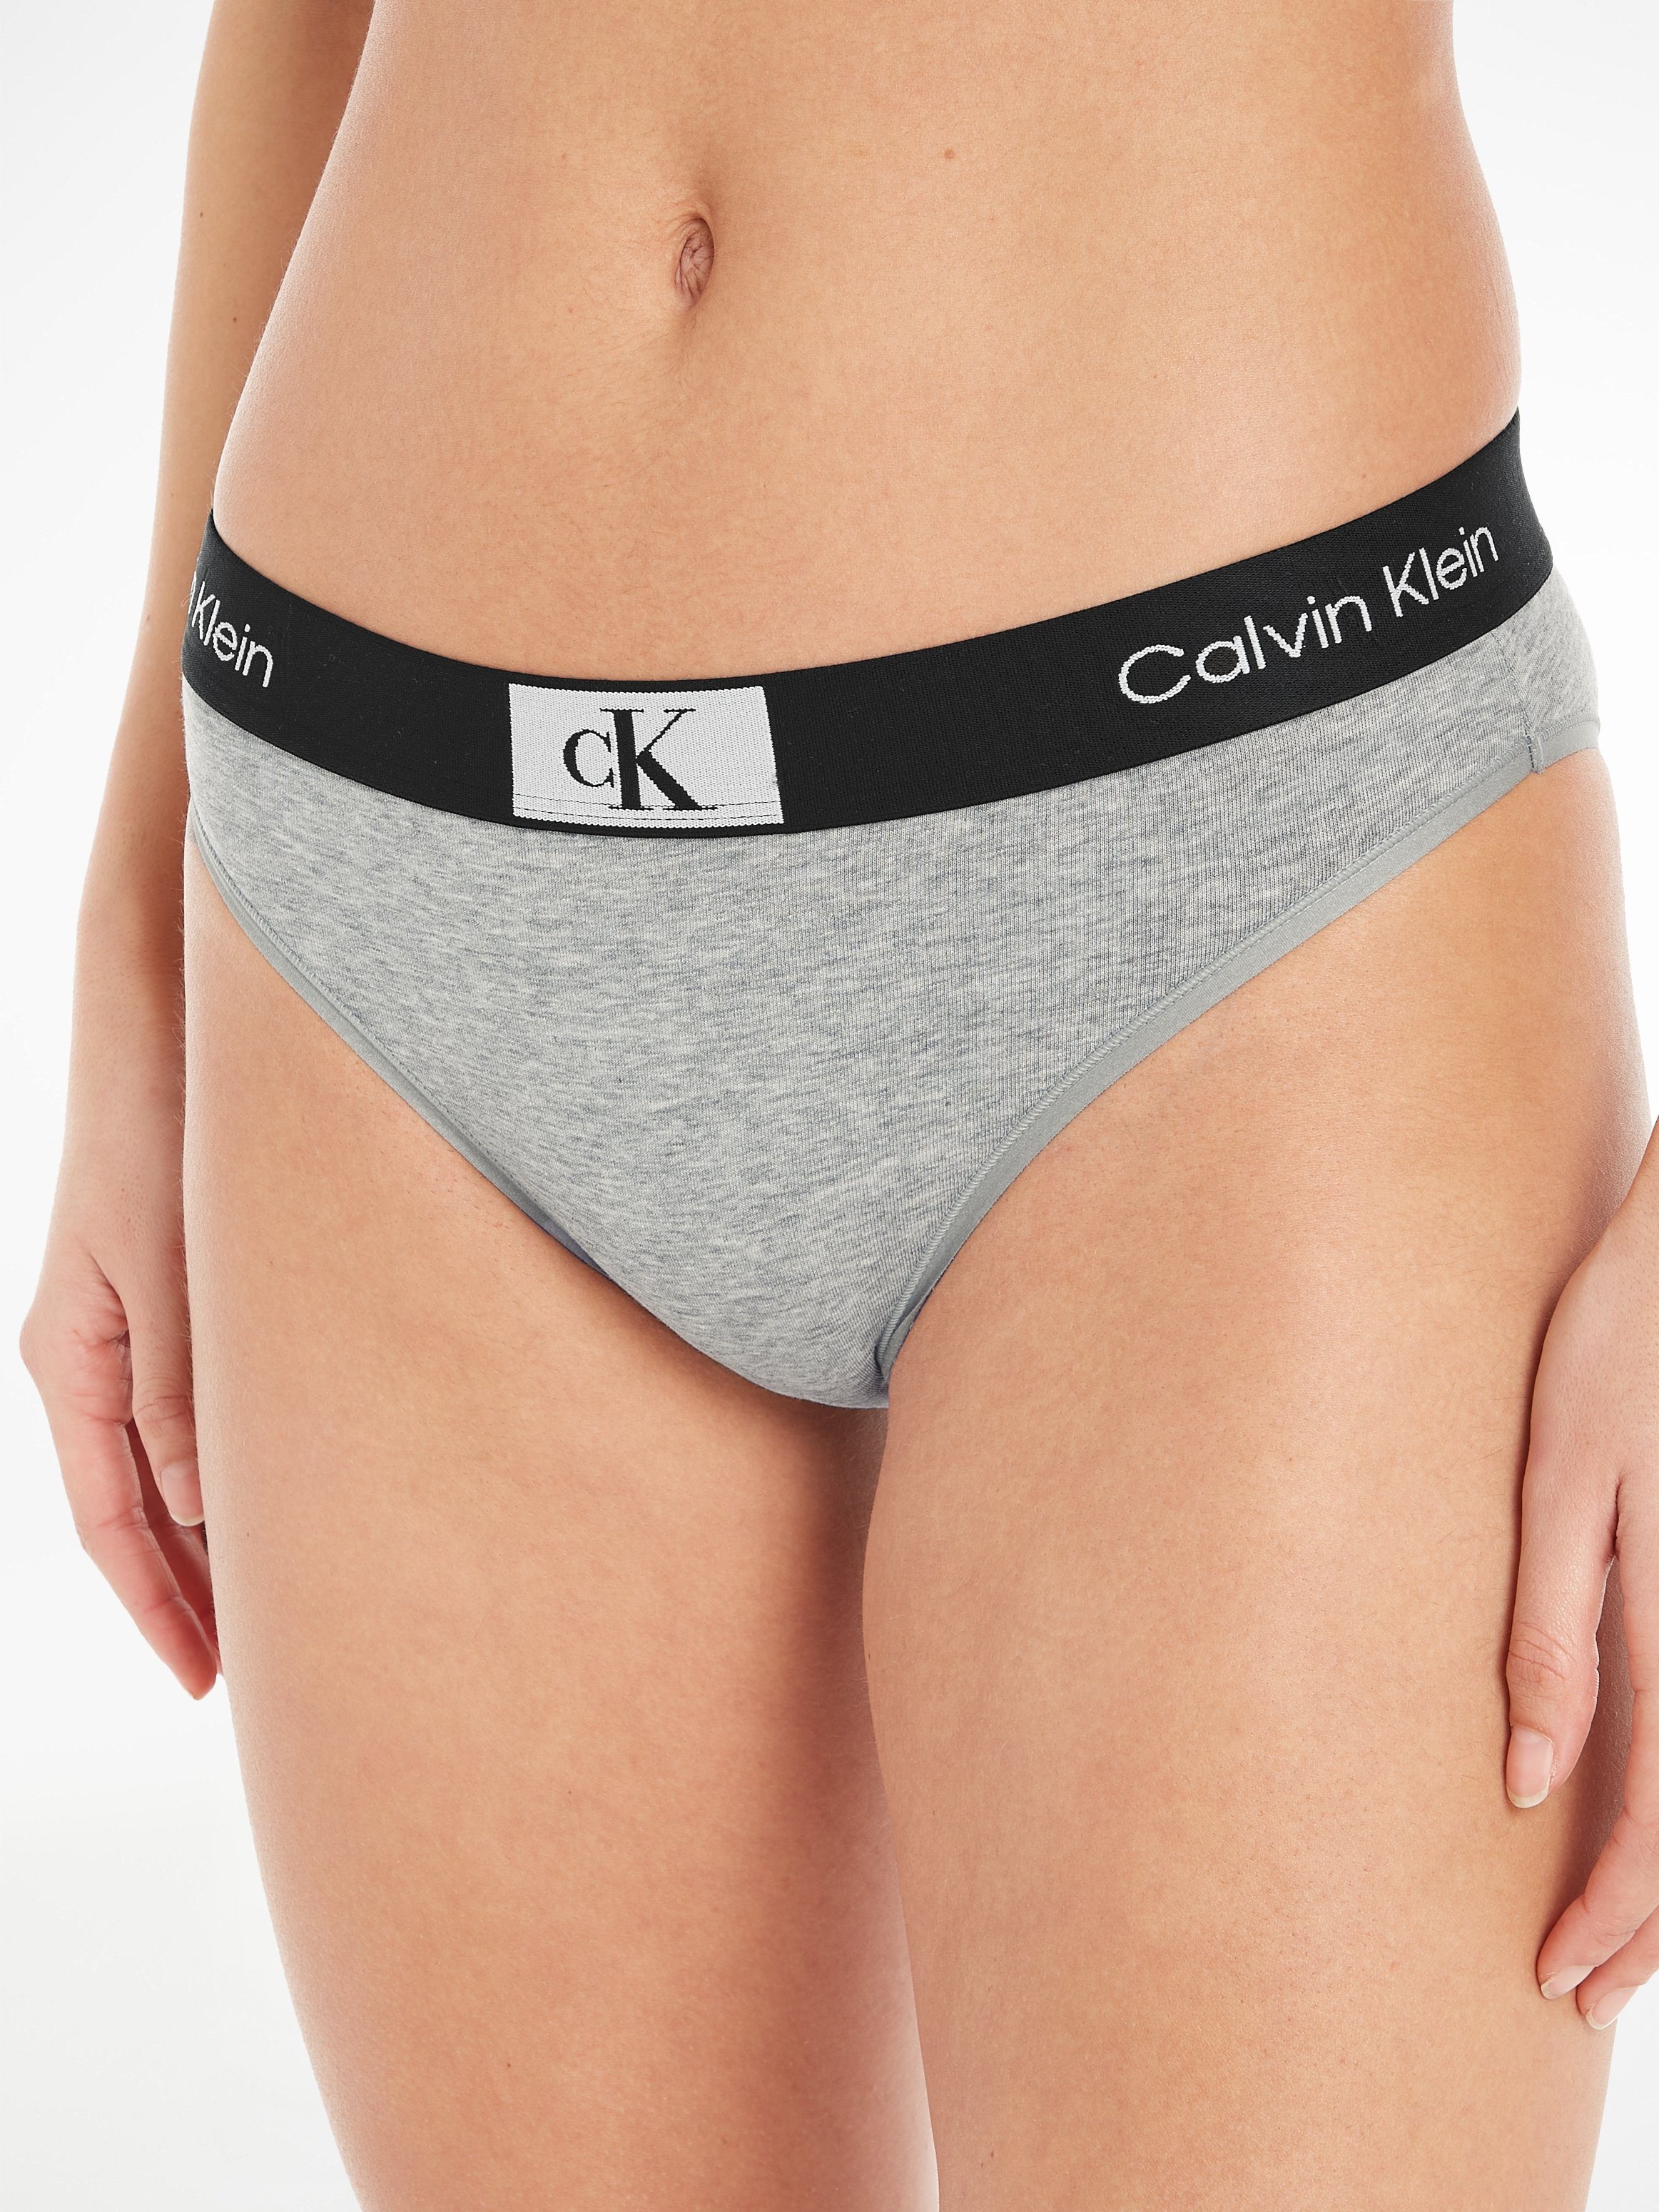 mit Underwear Calvin Klein grau Bikinislip Allover-Muster